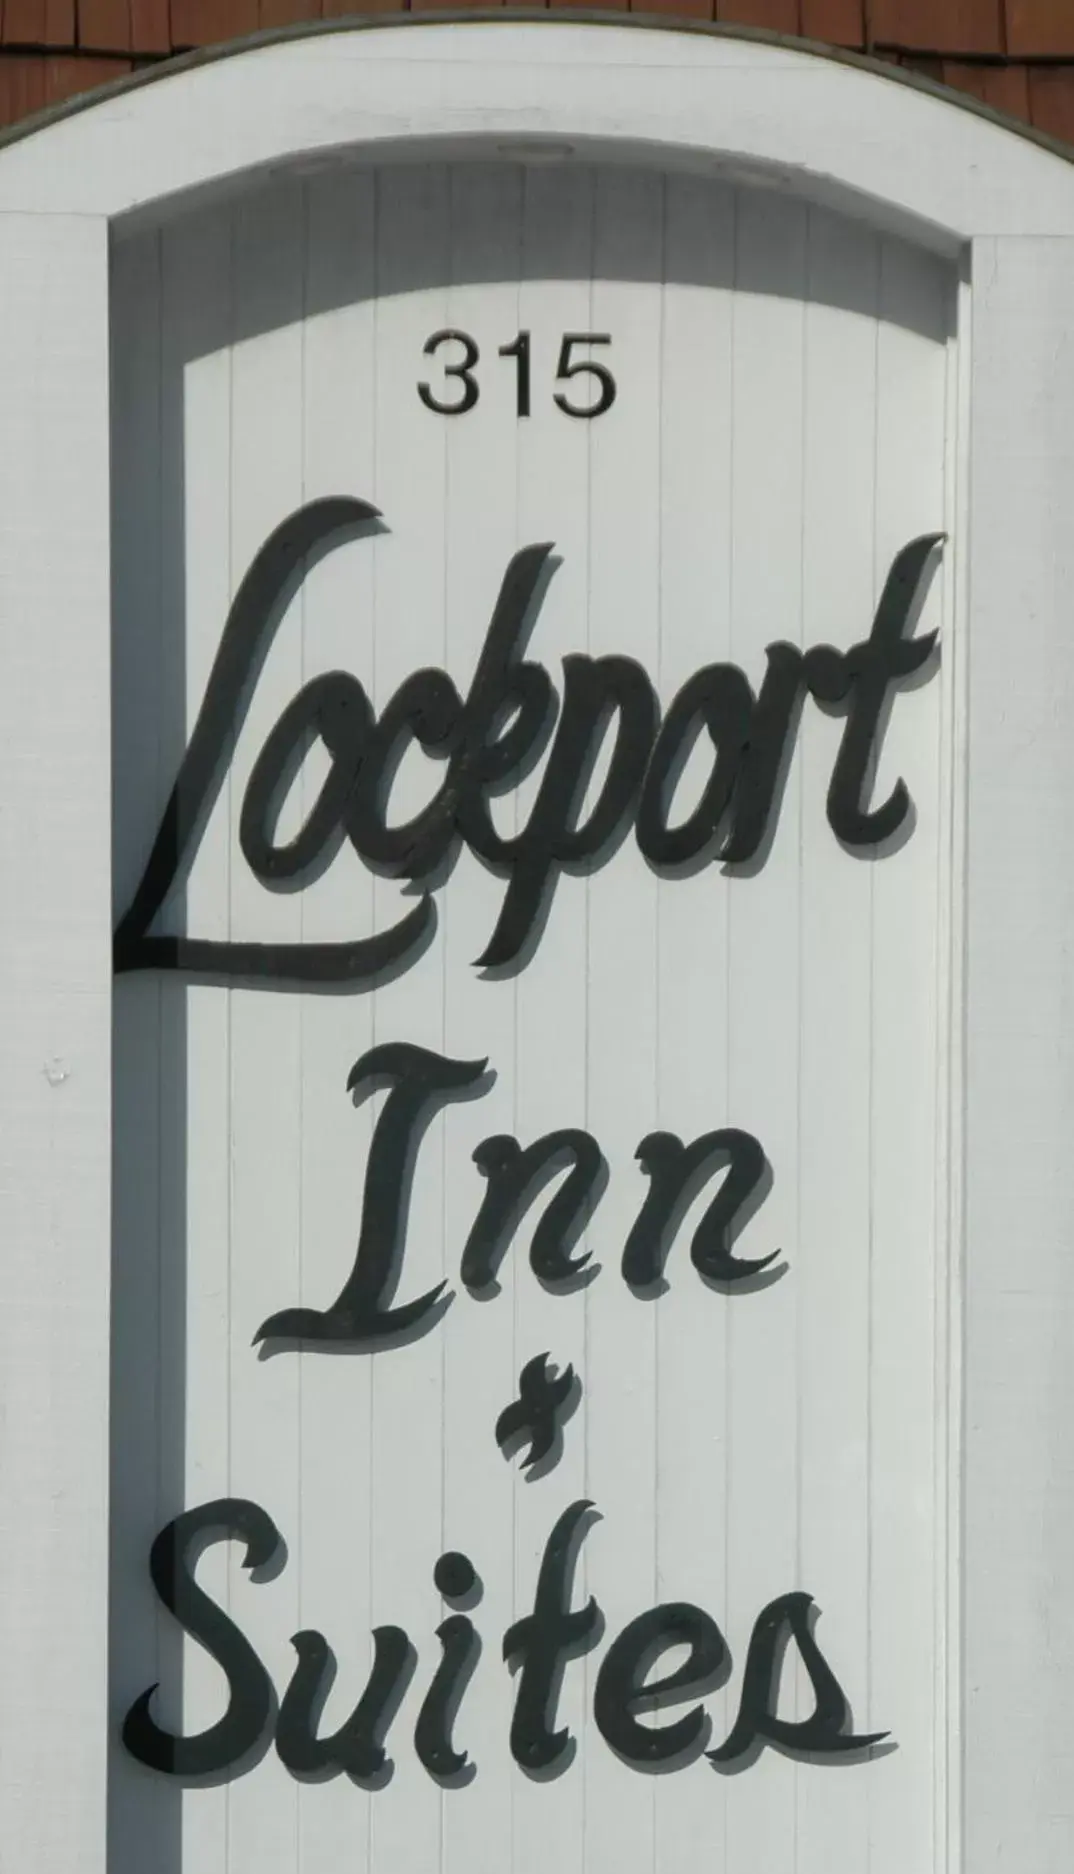 Lockport Inn and Suites